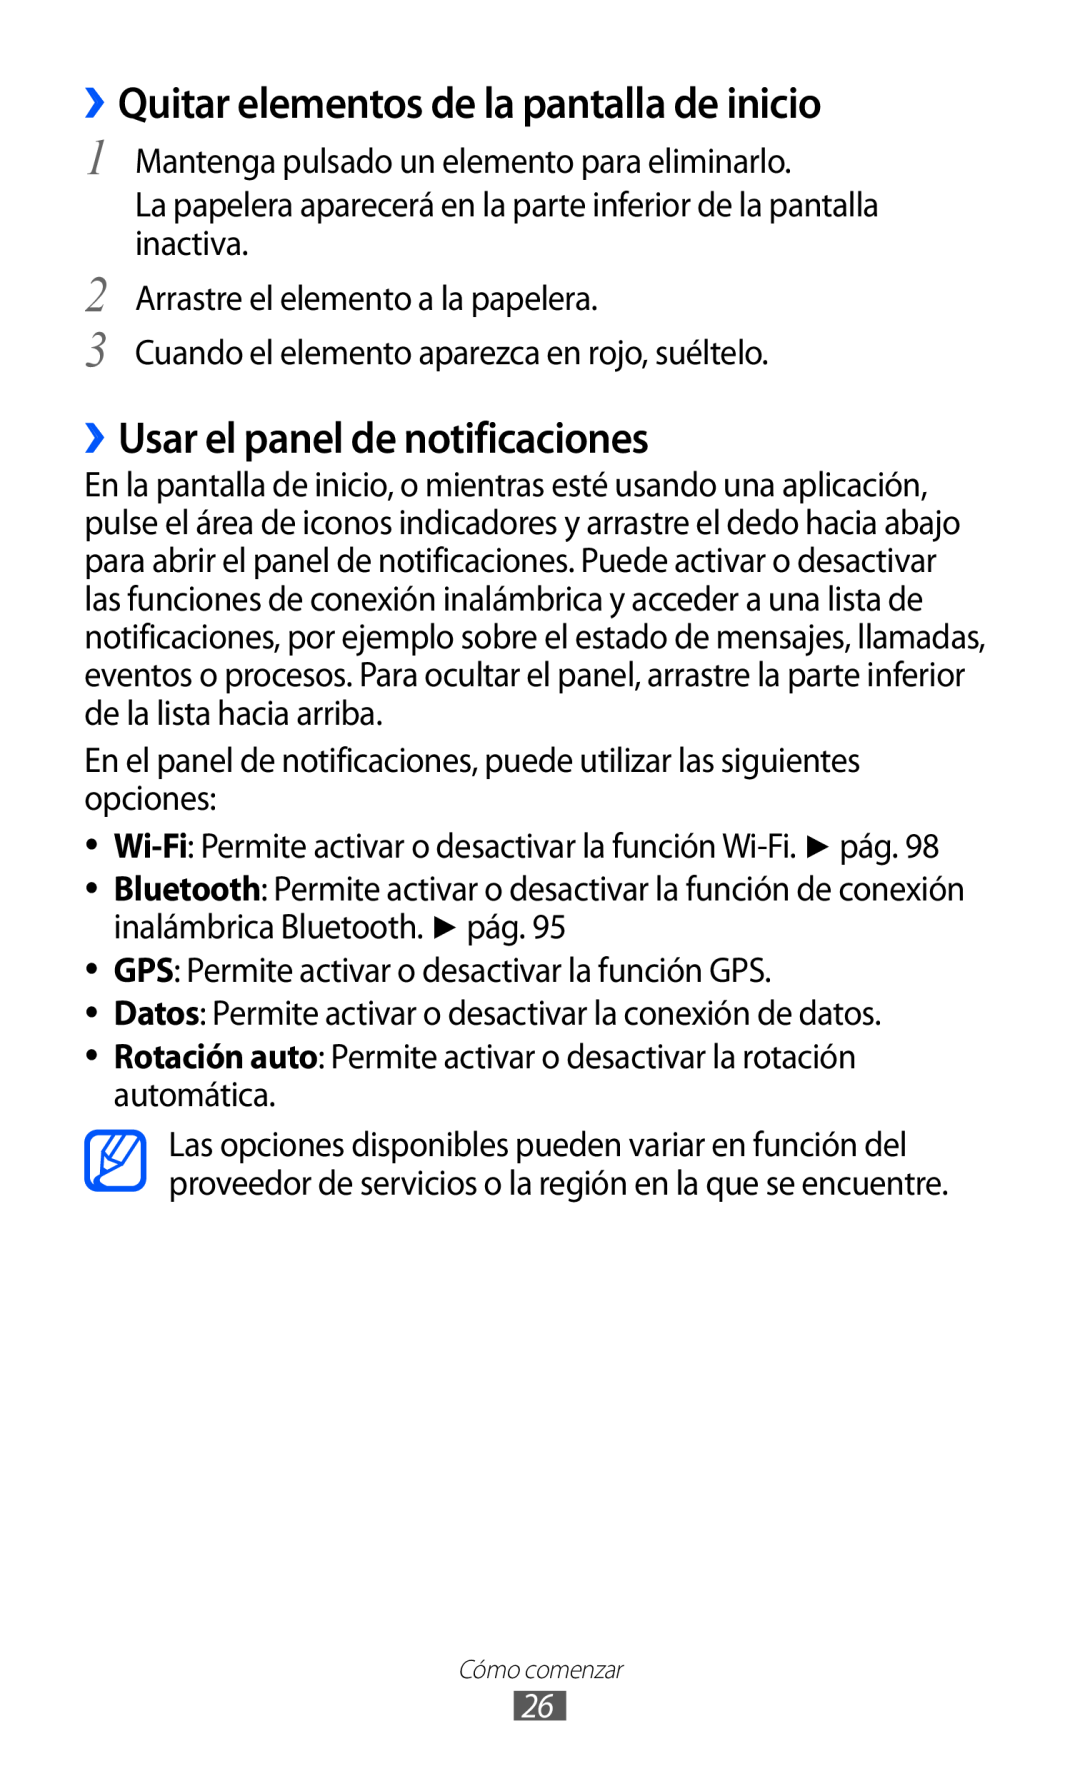 Samsung GT-S6500XKAITV, GT-S6500RWDTMN manual ››Quitar elementos de la pantalla de inicio, ››Usar el panel de notificaciones 